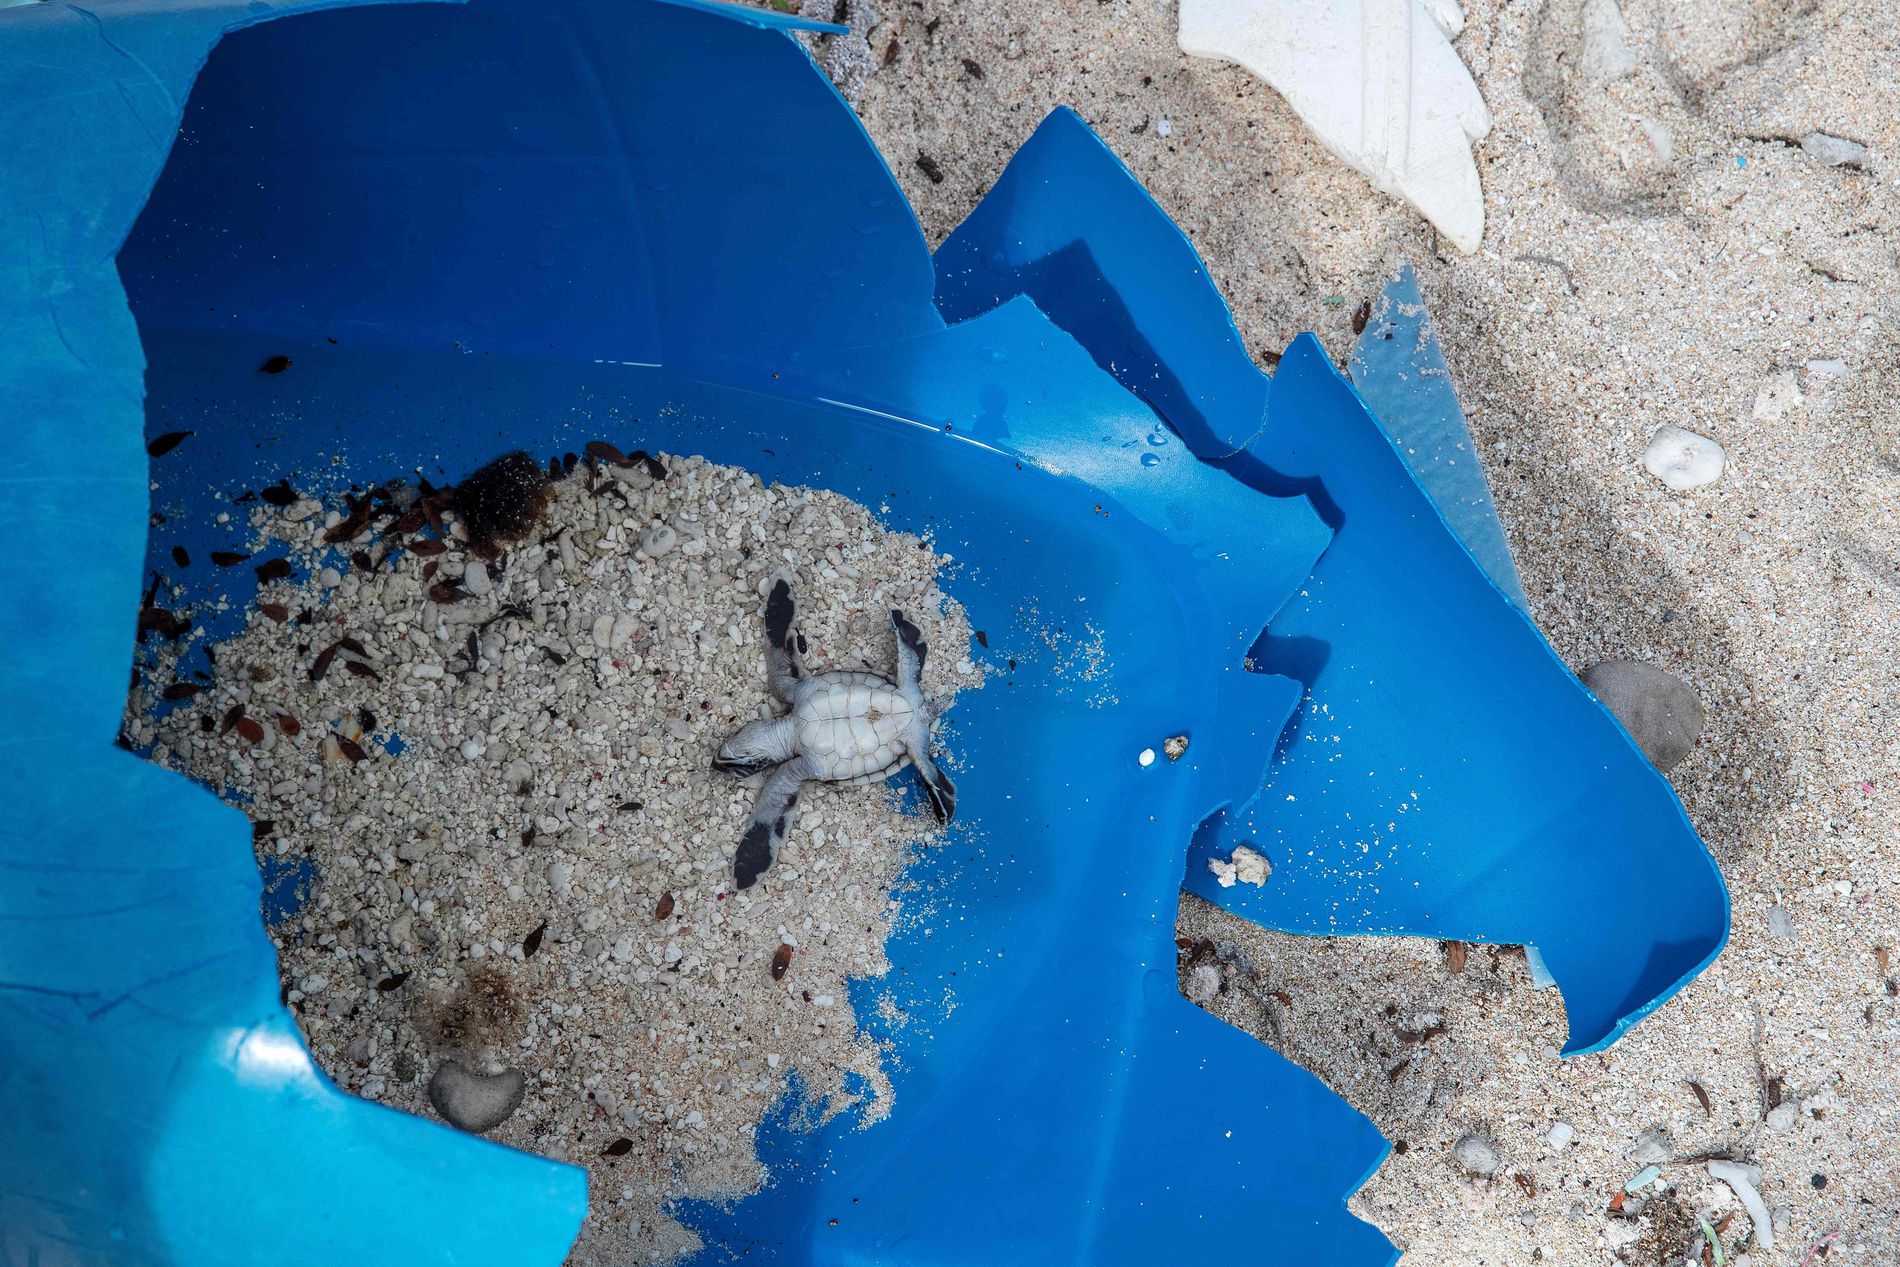 Фото из космоса мусорного острова в тихом океане